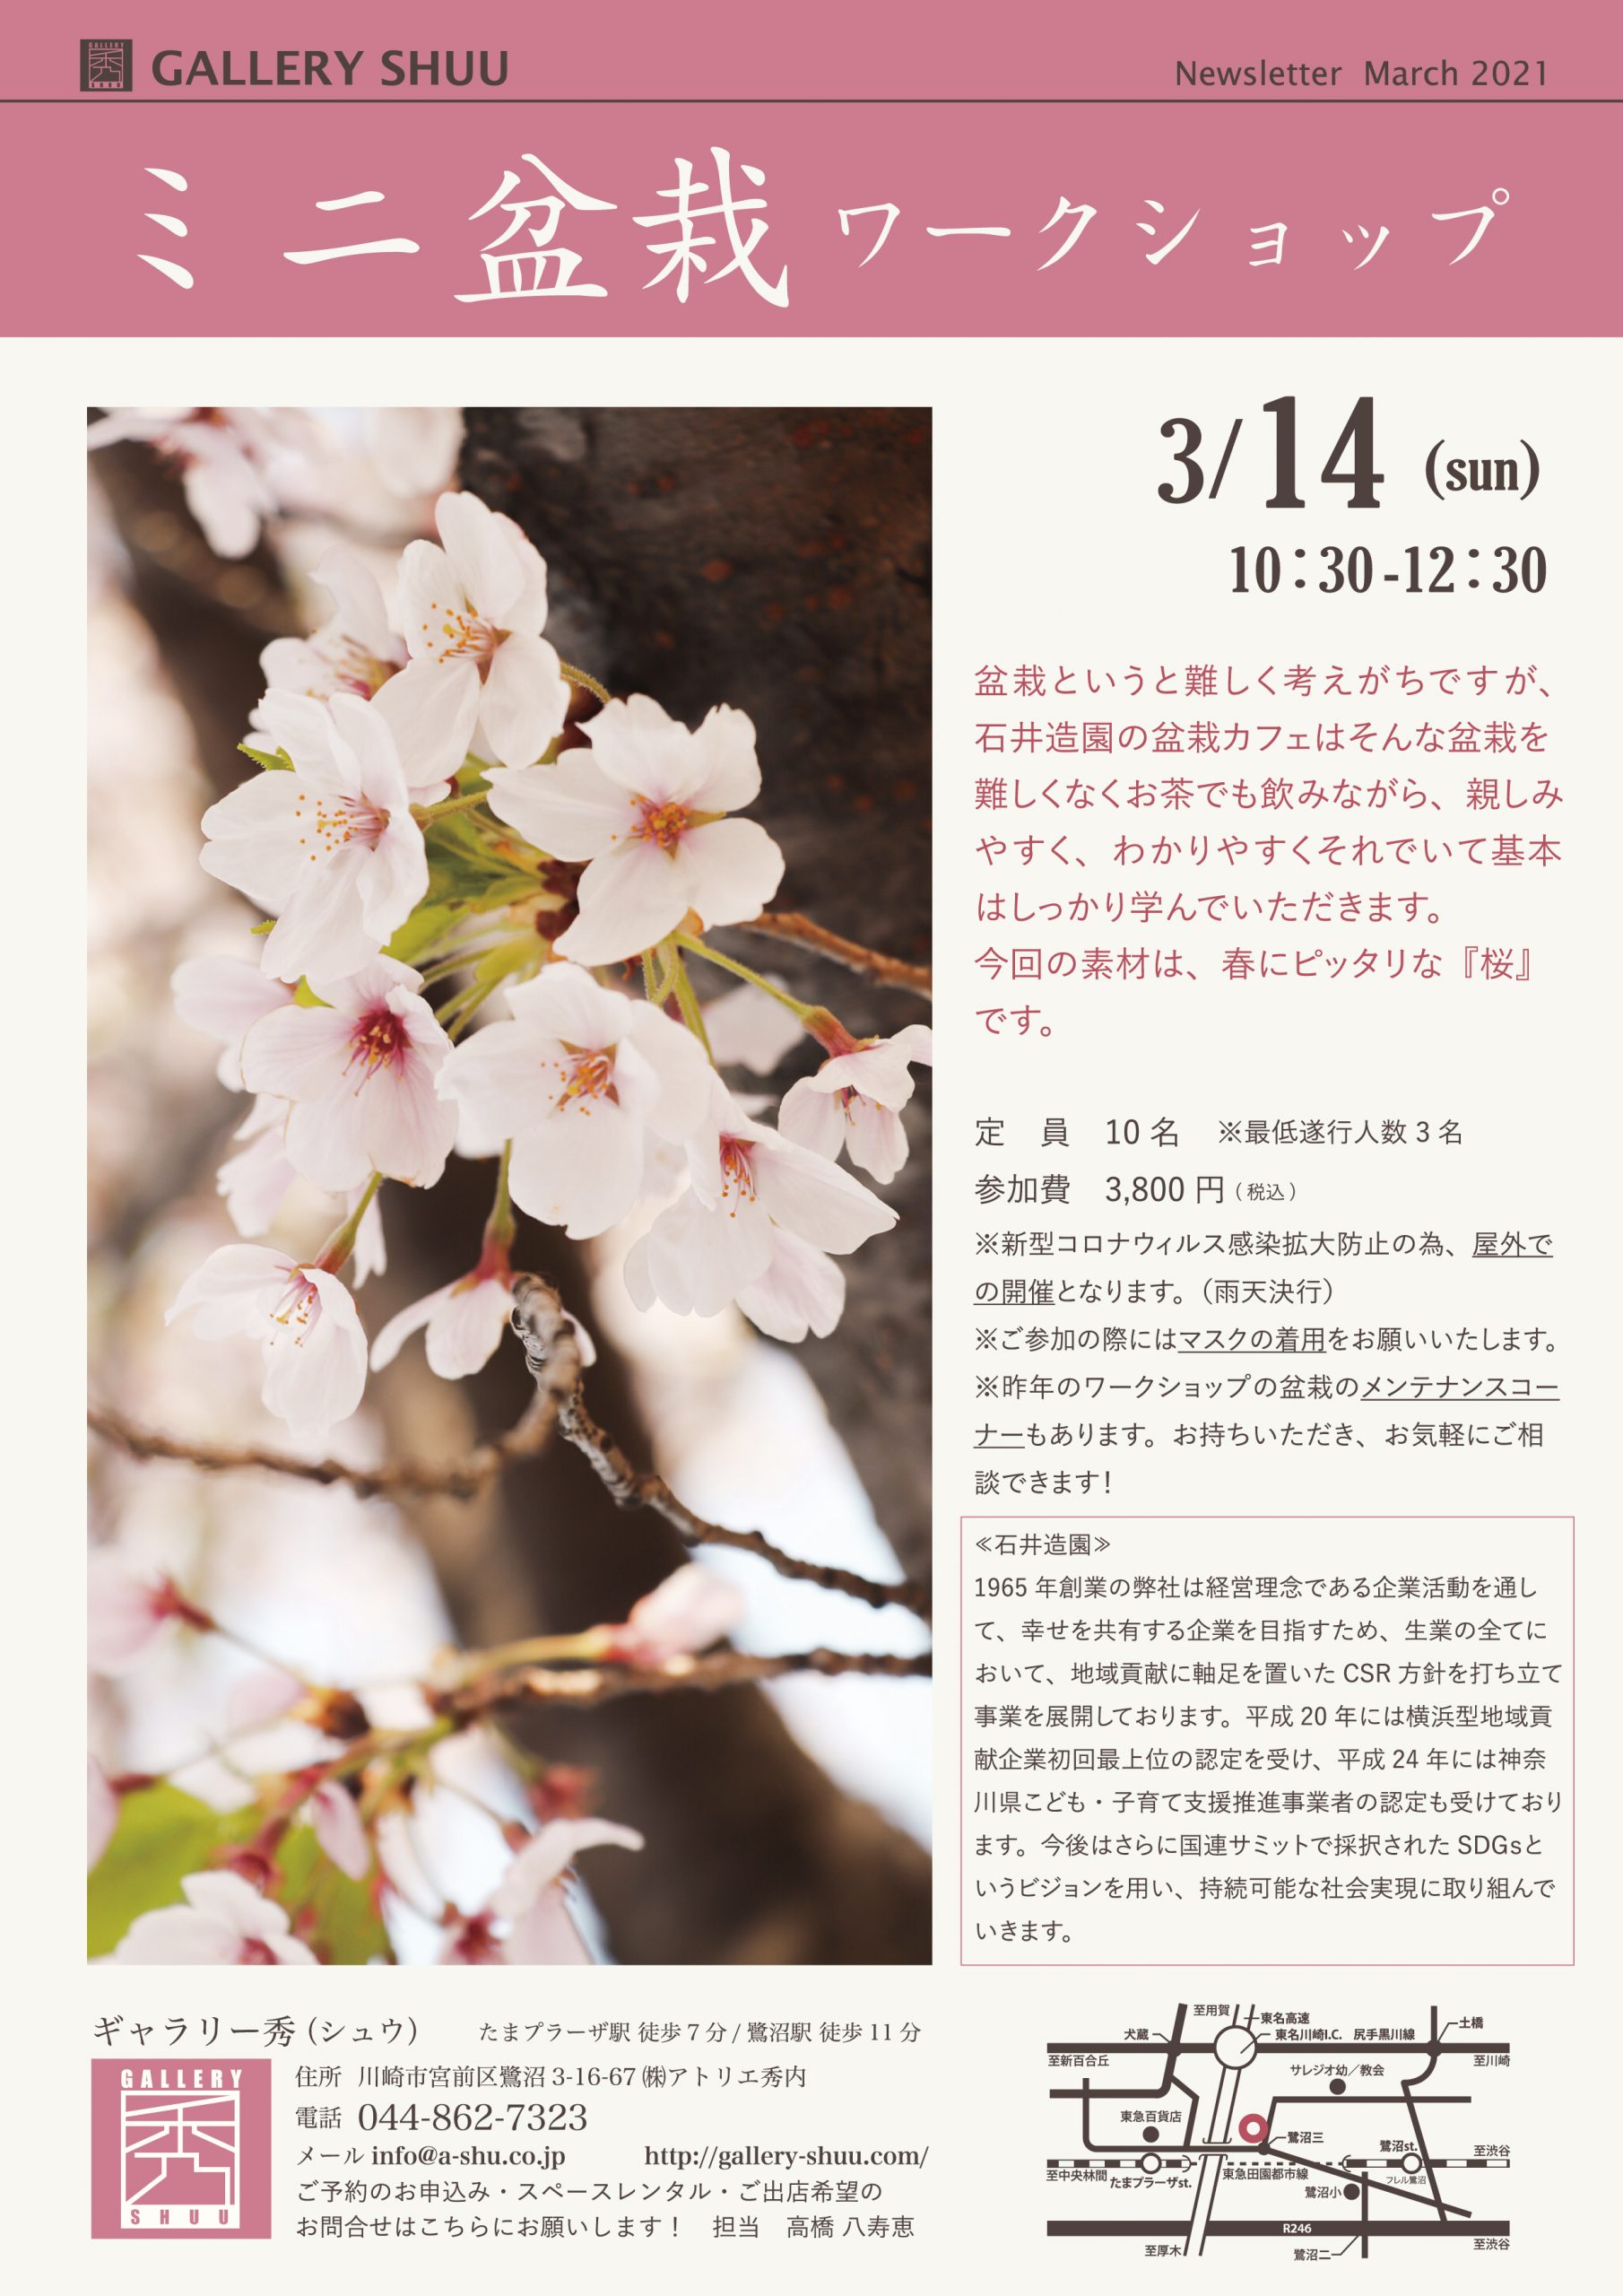 満員御礼 3 14 日 桜のミニ盆栽ワークショップ ギャラリー秀 たまプラーザのハウスギャラリー